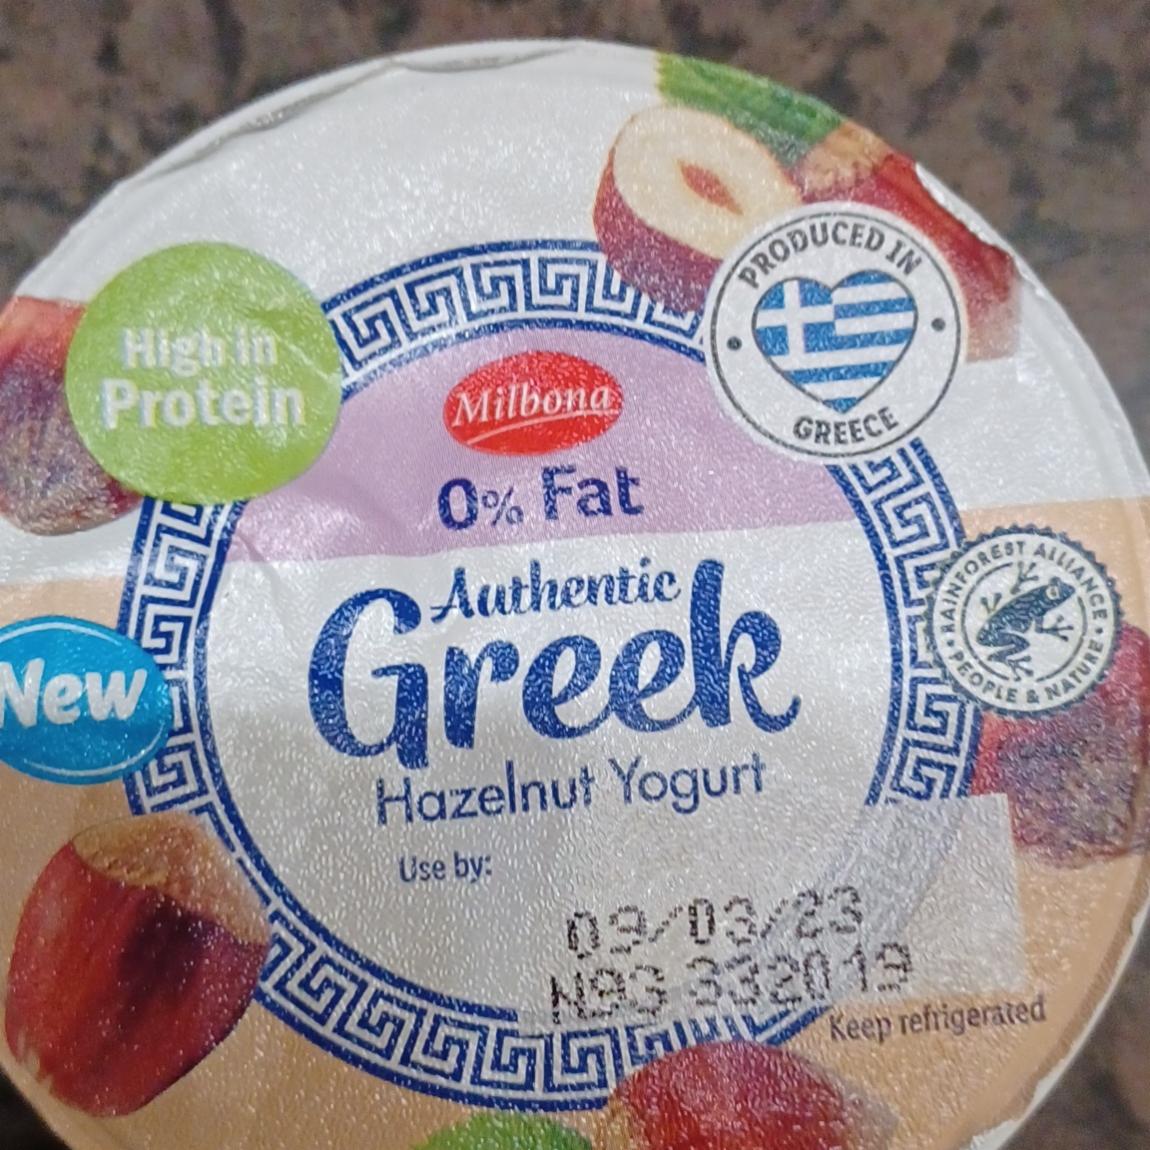 Fotografie - Authentic Greek Hazelnut Yogurt 0% Fat Milbona